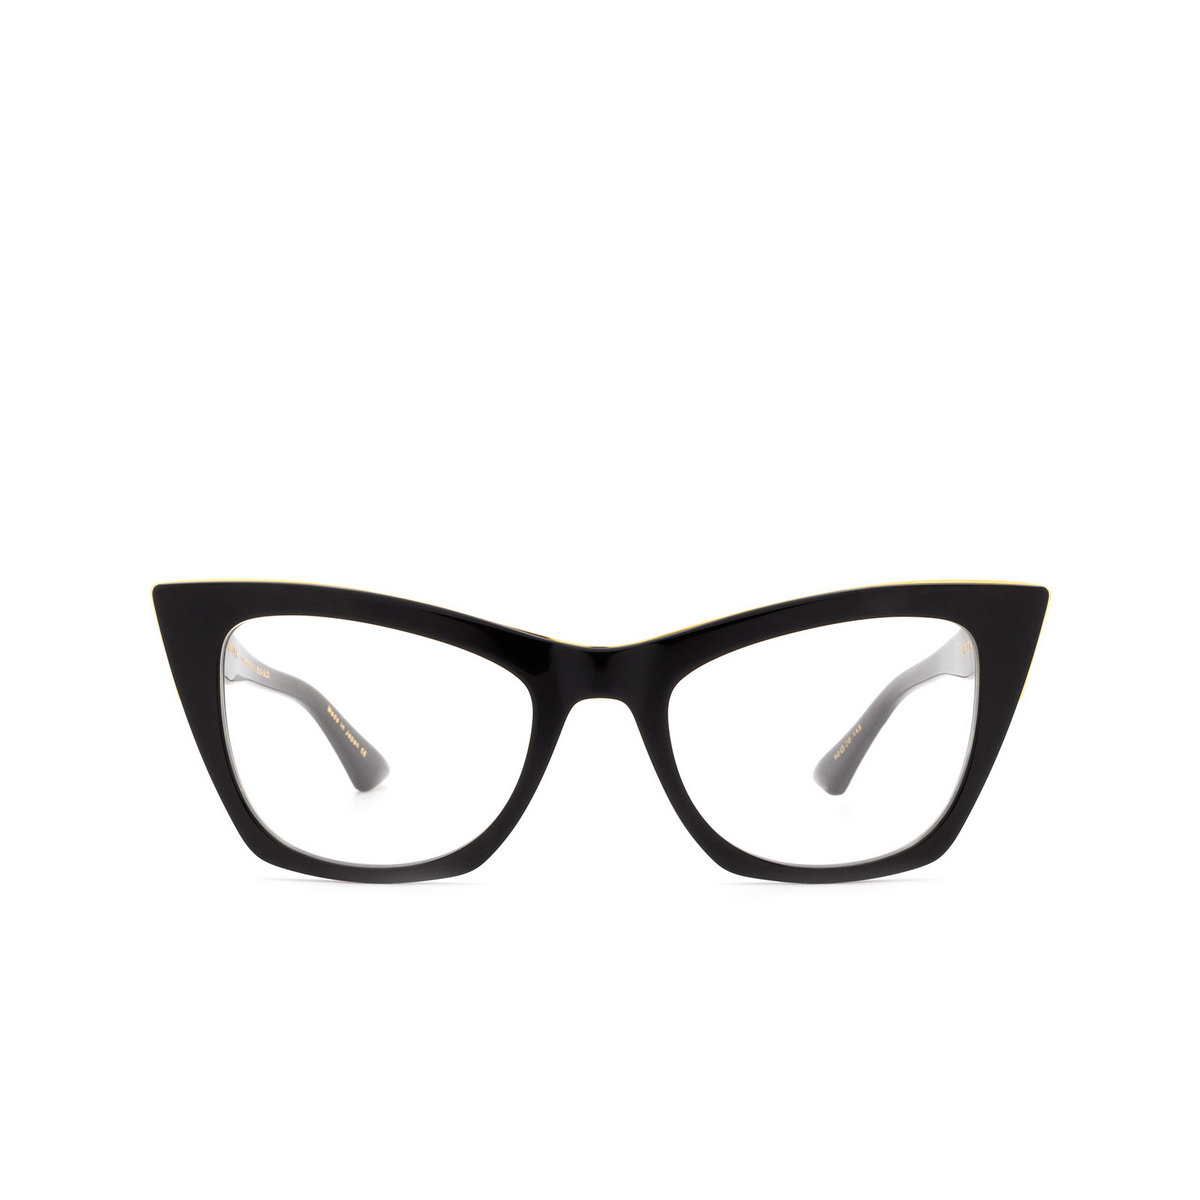 Dita SHOWGOER Eyeglasses BLK-GLD Black & Gold - front view